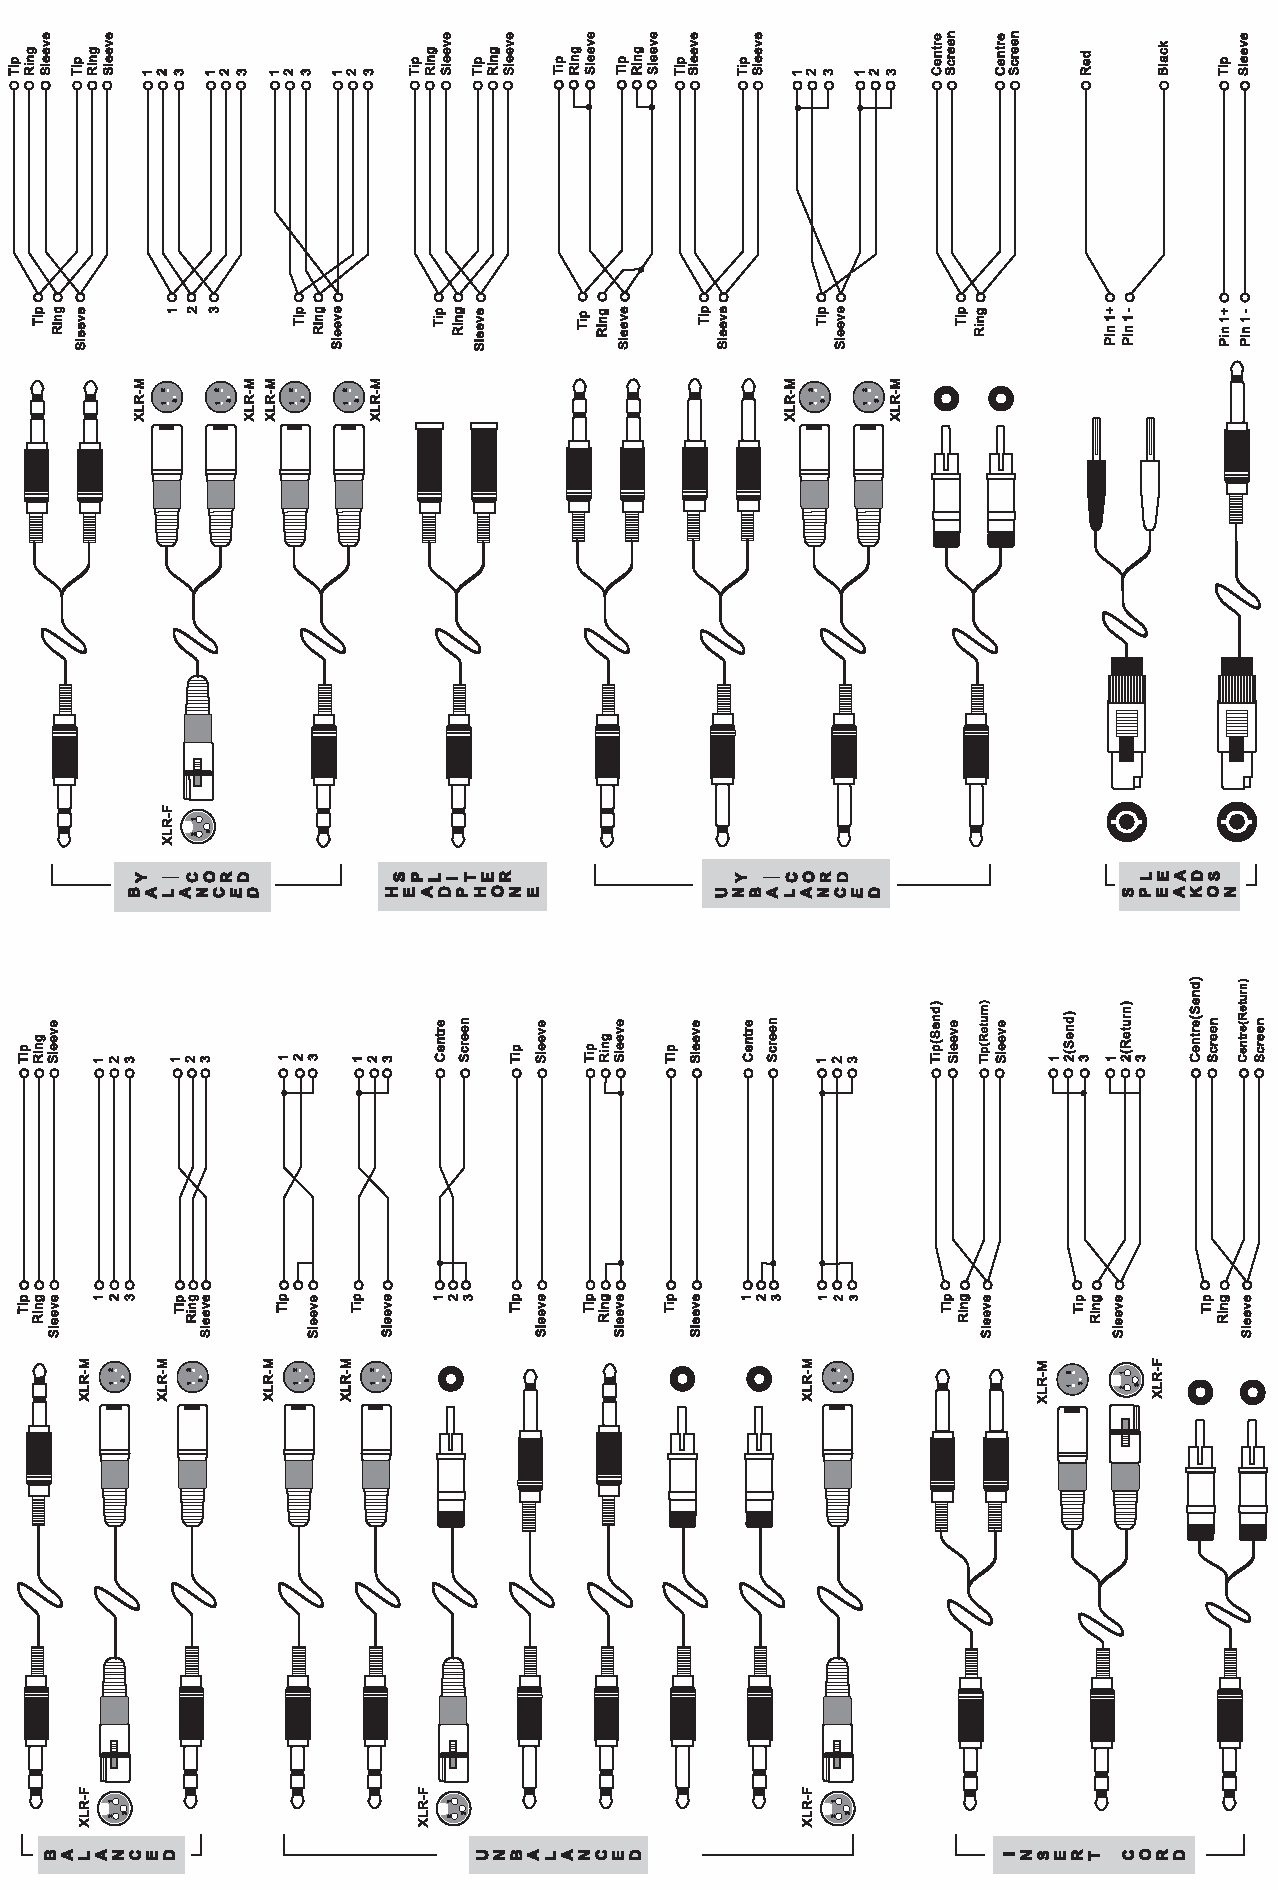 TYPISCHE KABELVERBINDUNGEN Die folgende Abbildung mit typischen Kabelverbindungen ist in sieben Abschnitte unterteilt: SYMMETRISCH, UNSYMMETRISCH, INSERT KABEL, SYMMETRISCHES Y-KABEL, KOPFHÖRER